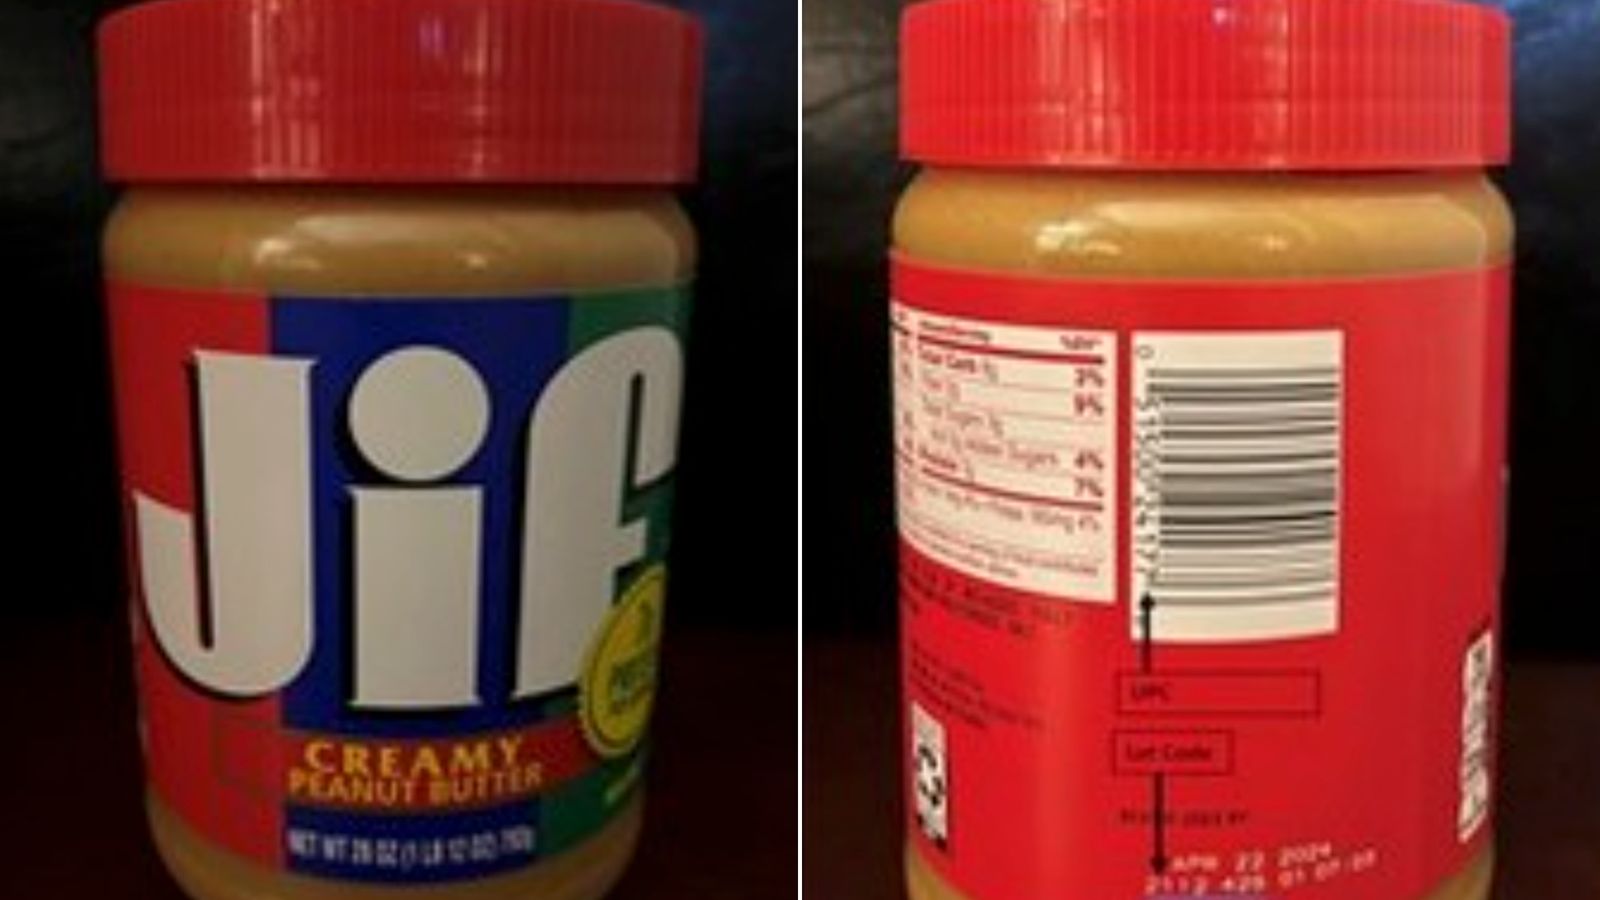 https://media.cnn.com/api/v1/images/stellar/prod/220521125406-jif-peanut-butter-recall.jpg?c=original